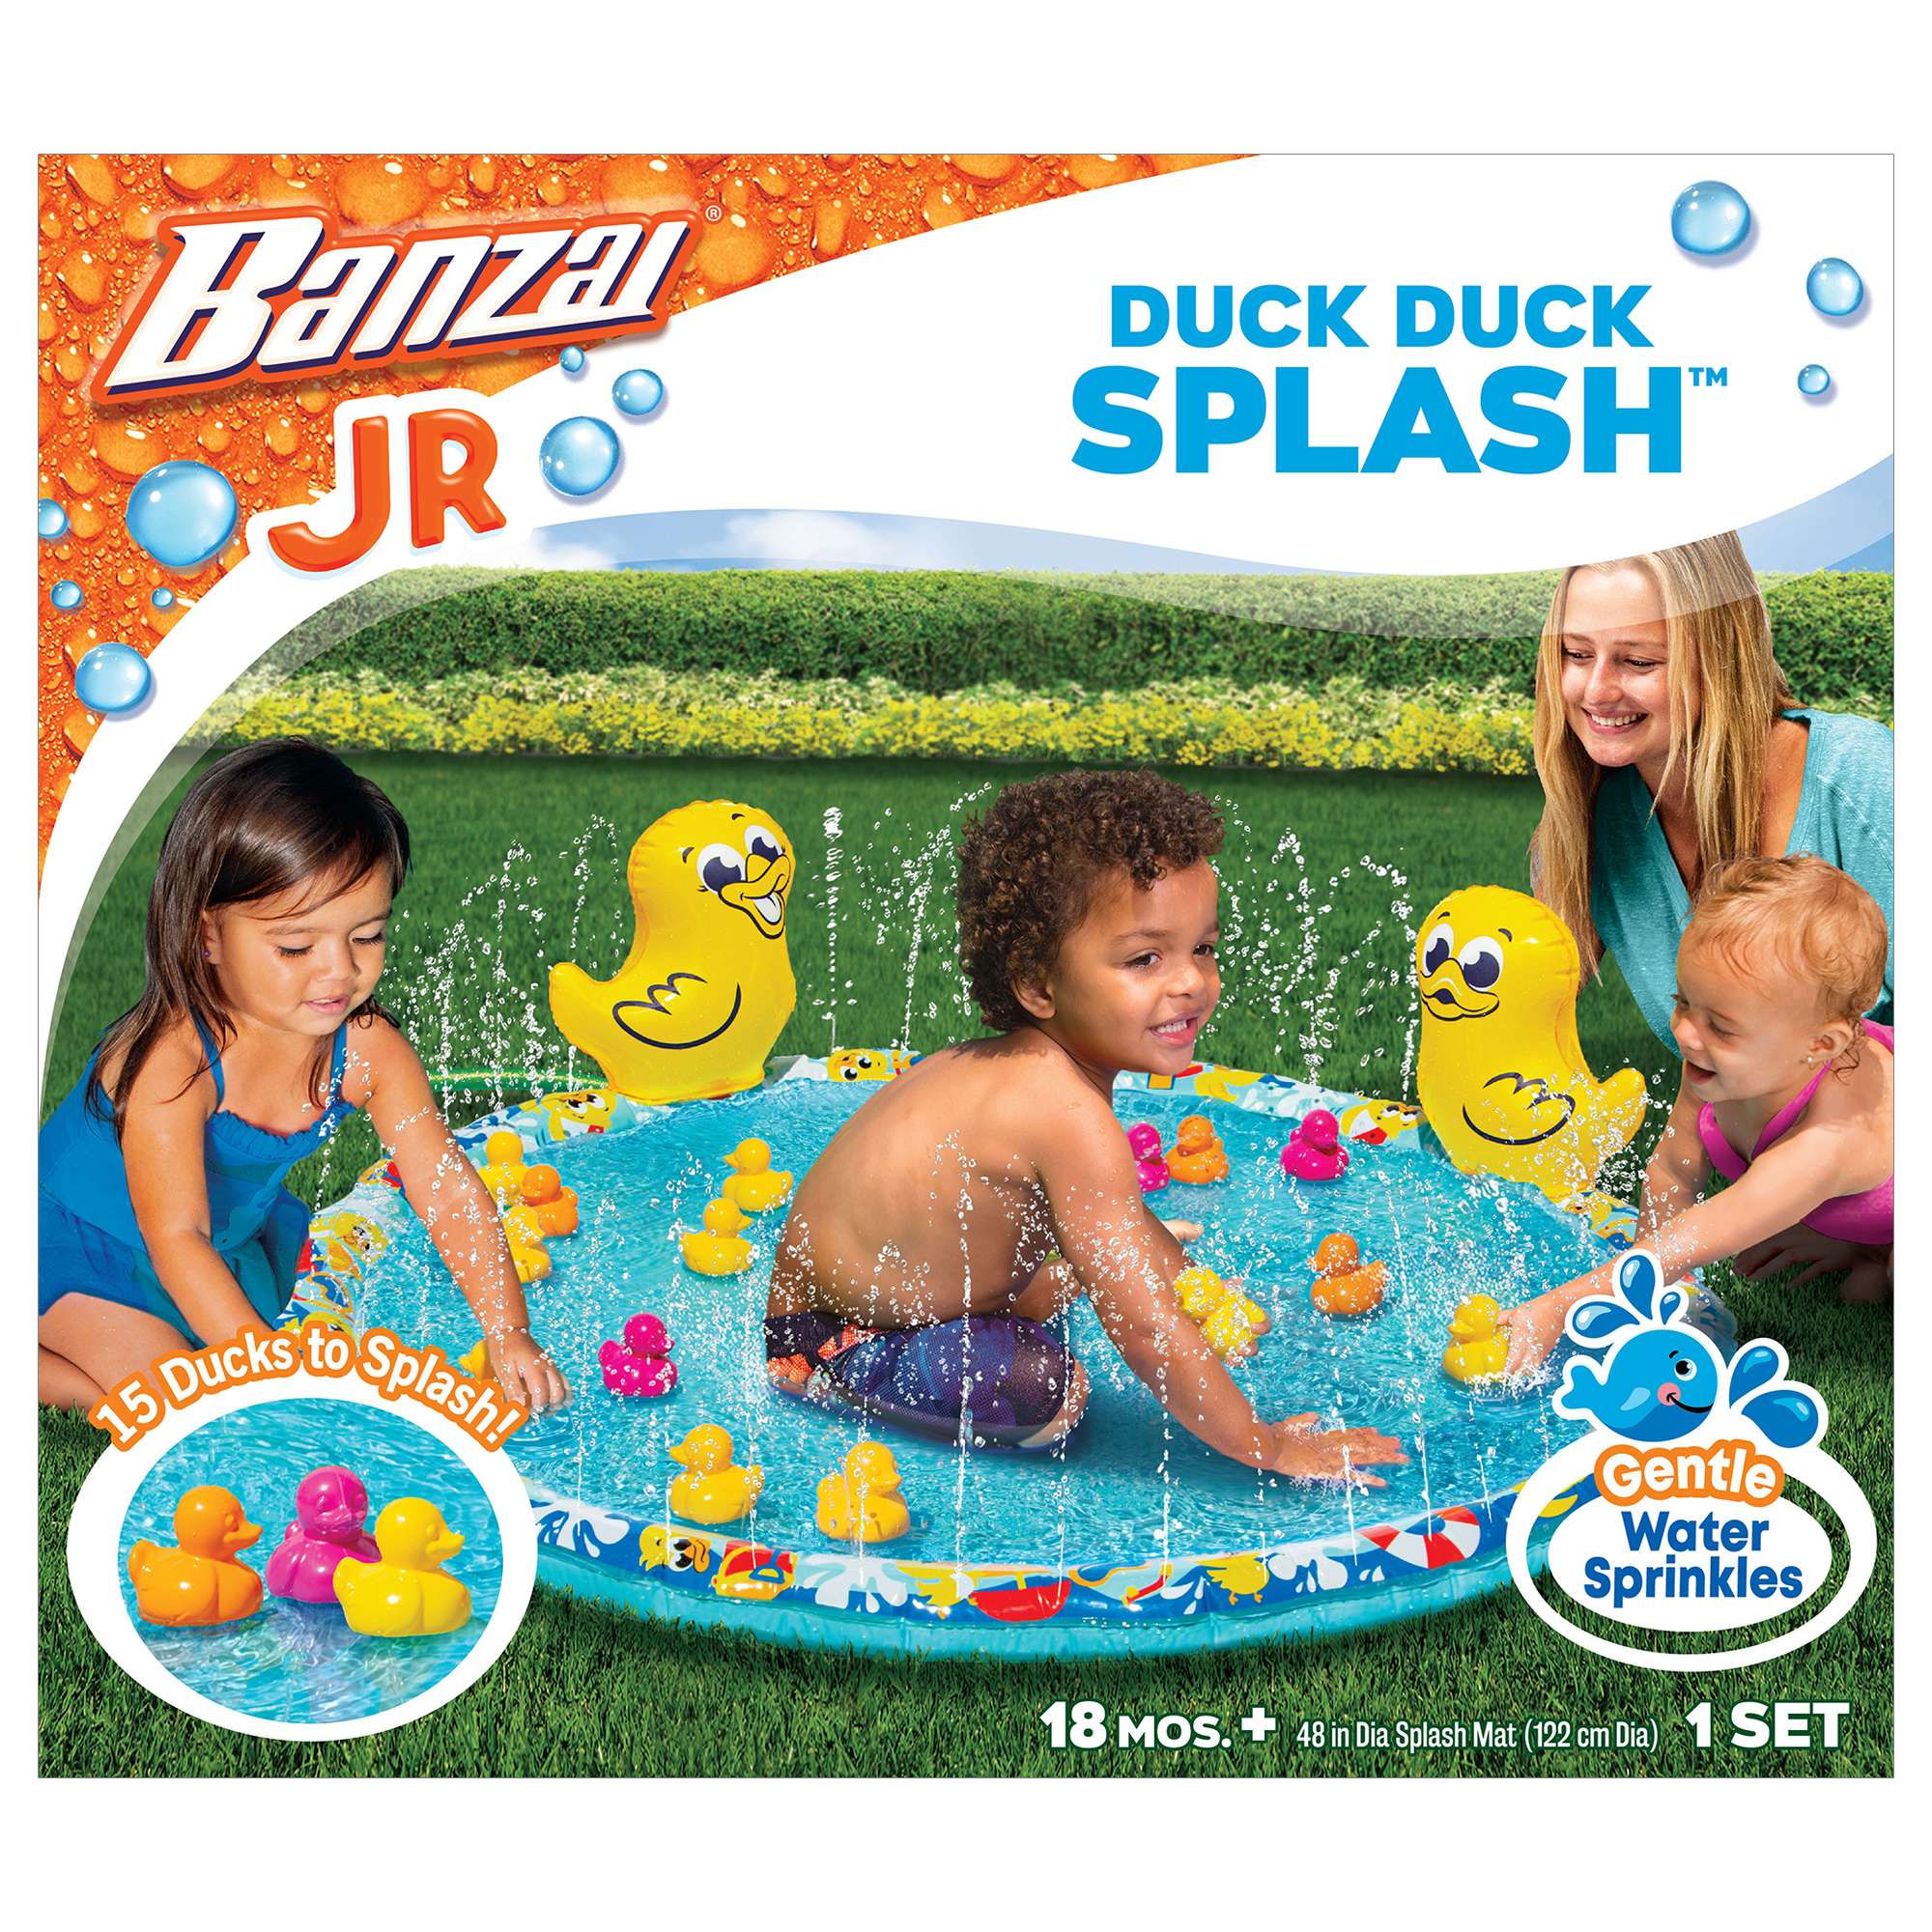 Banzai Jr. Duck Duck Splash 48" Outdoor Summer Water Play Mat, Ages 18 Months + - image 4 of 10